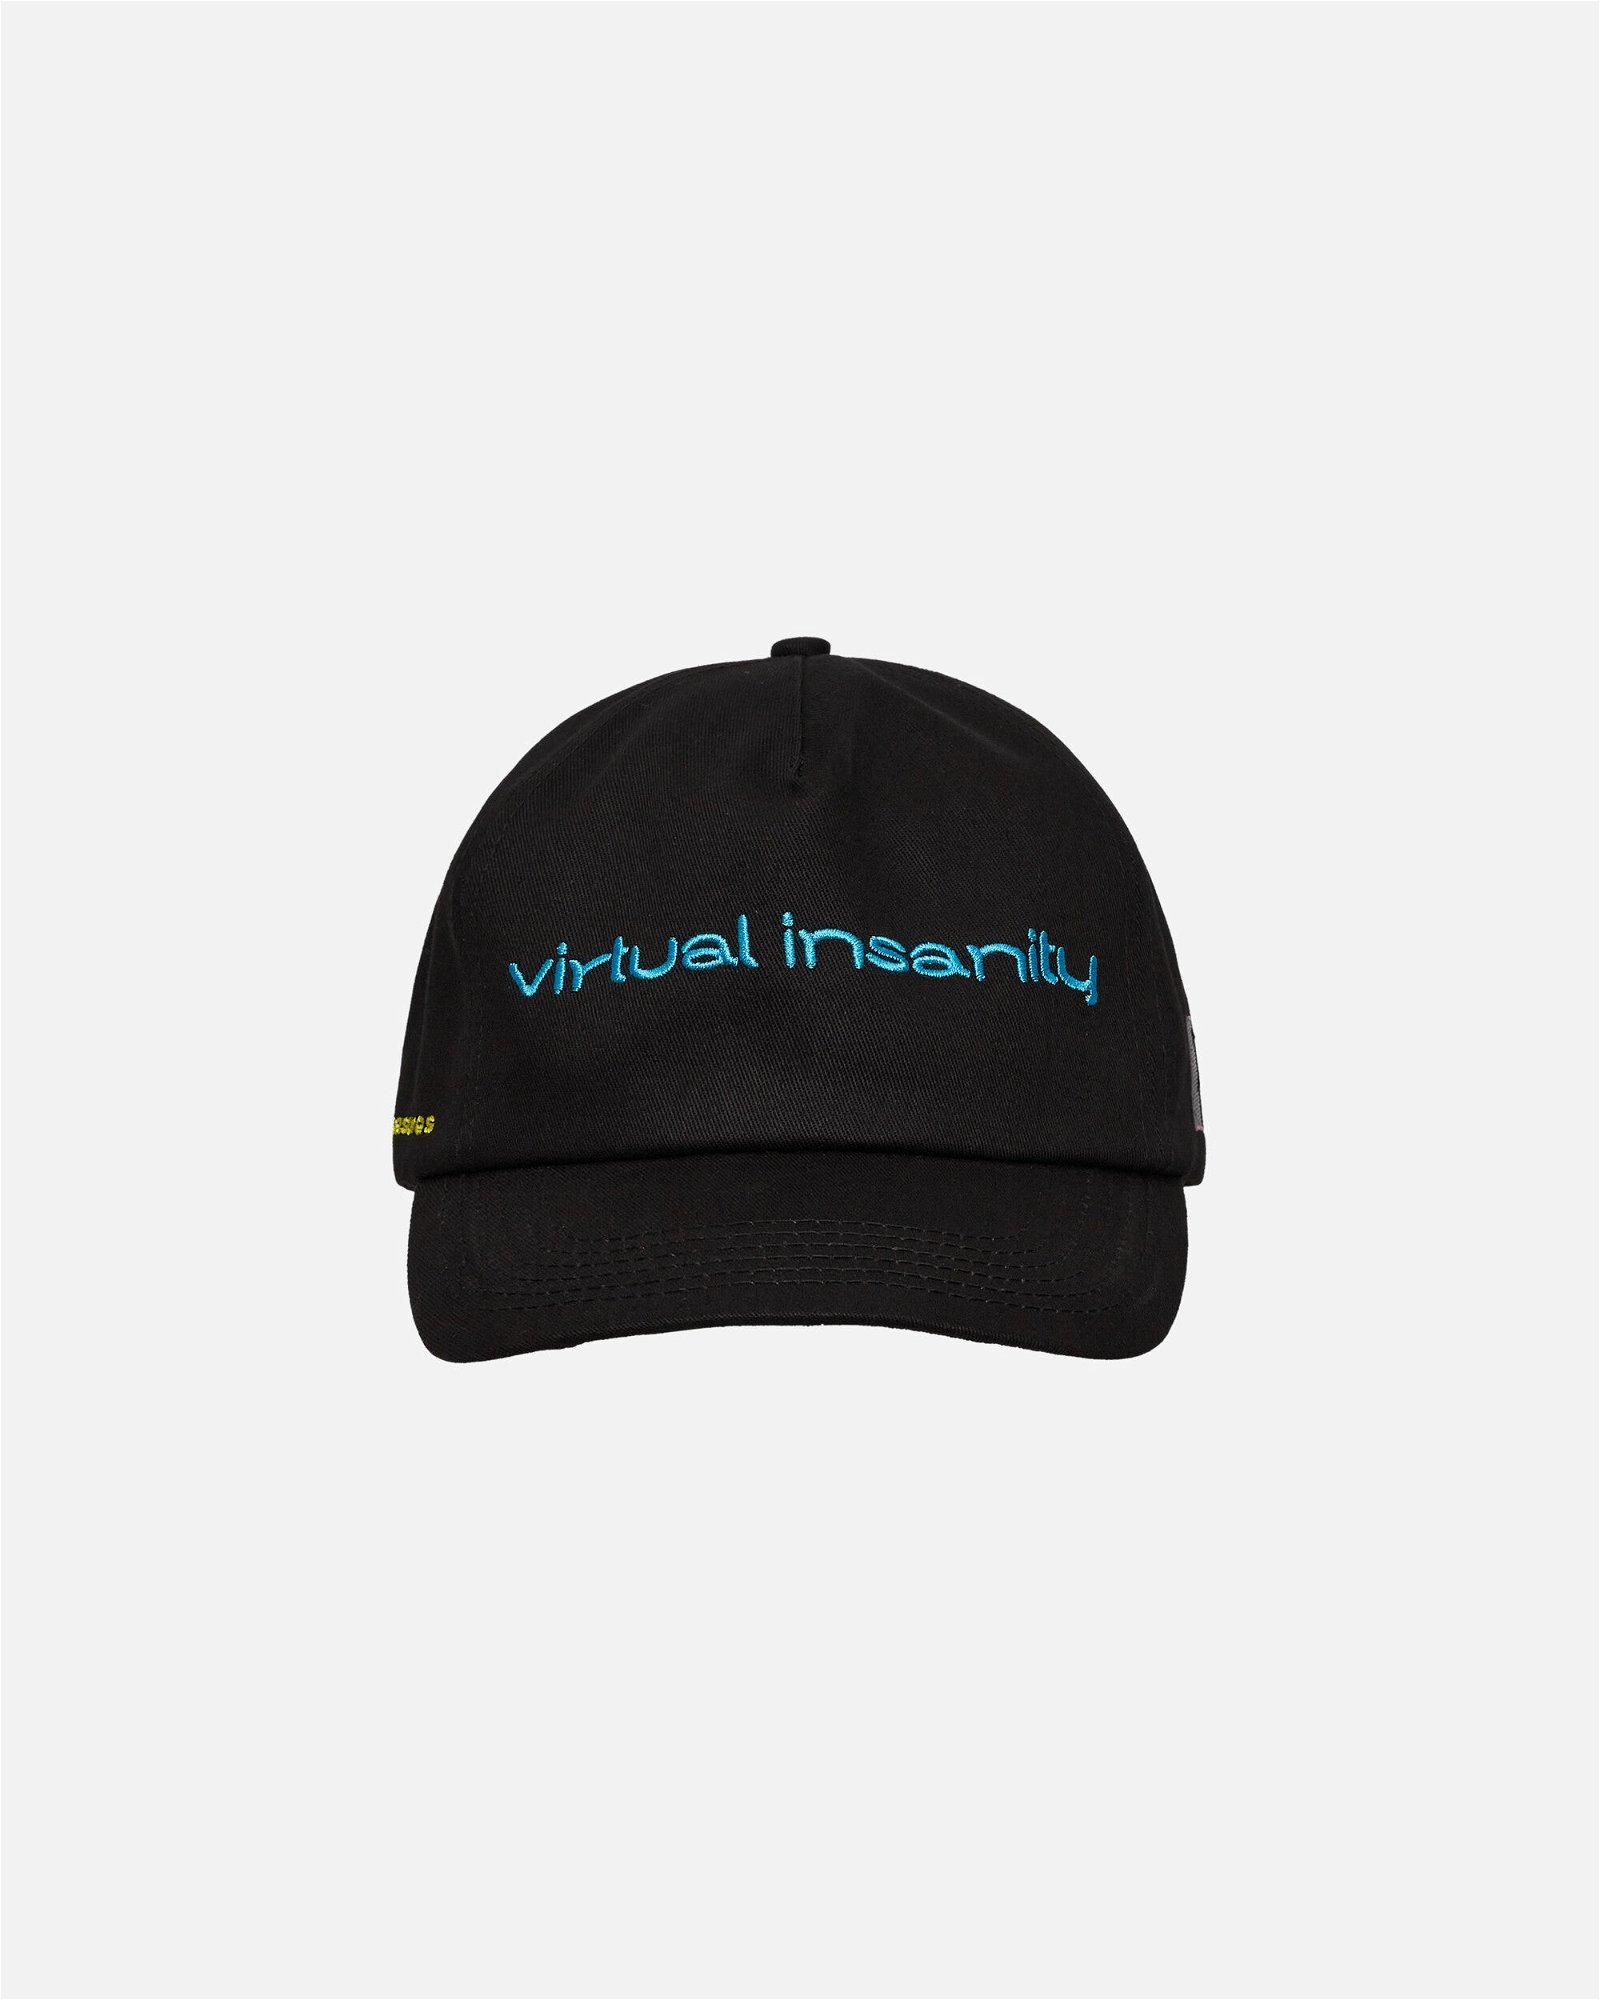 Jamiroquai Virtual Insanity Cap